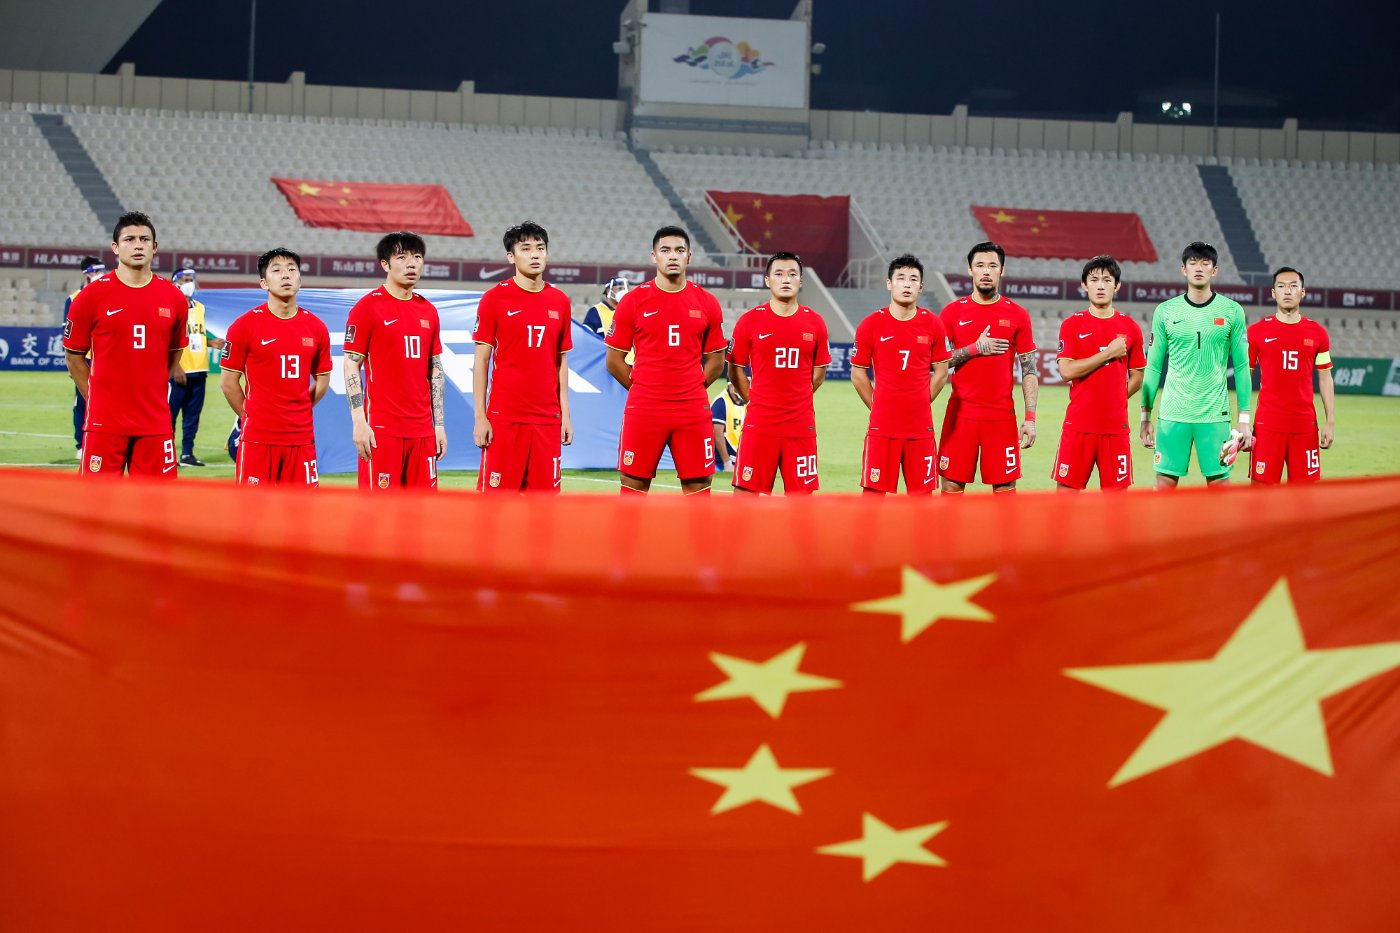 Hiệp hội Bóng đá Trung Quốc (CFA) lên phương án lựa chọn sân vận động ở Macau